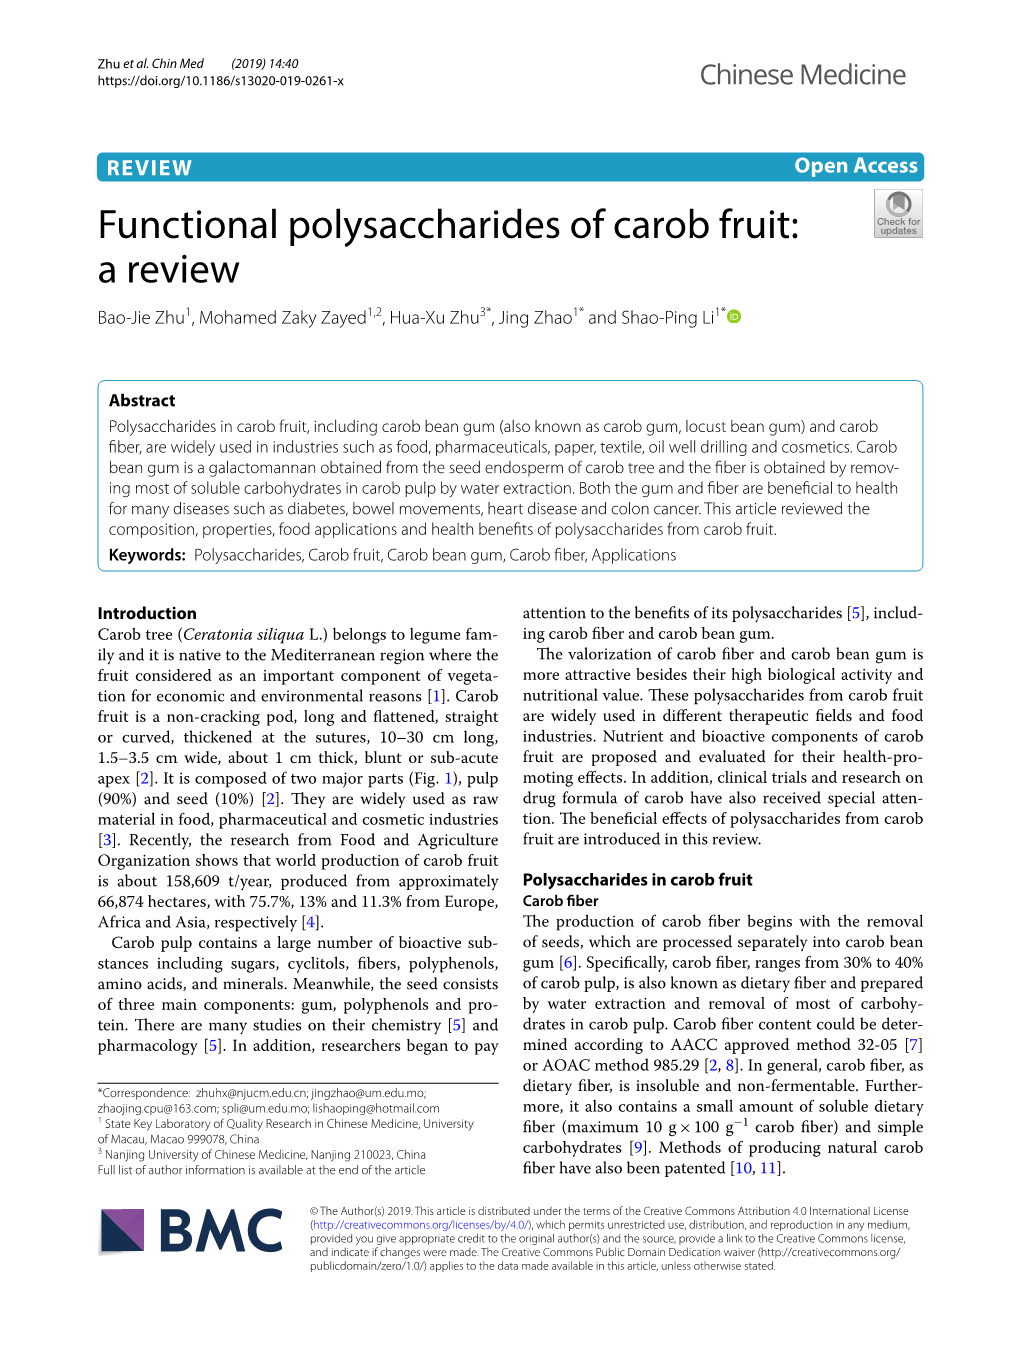 Functional Polysaccharides of Carob Fruit: a Review Bao‑Jie Zhu1, Mohamed Zaky Zayed1,2, Hua‑Xu Zhu3*, Jing Zhao1* and Shao‑Ping Li1*